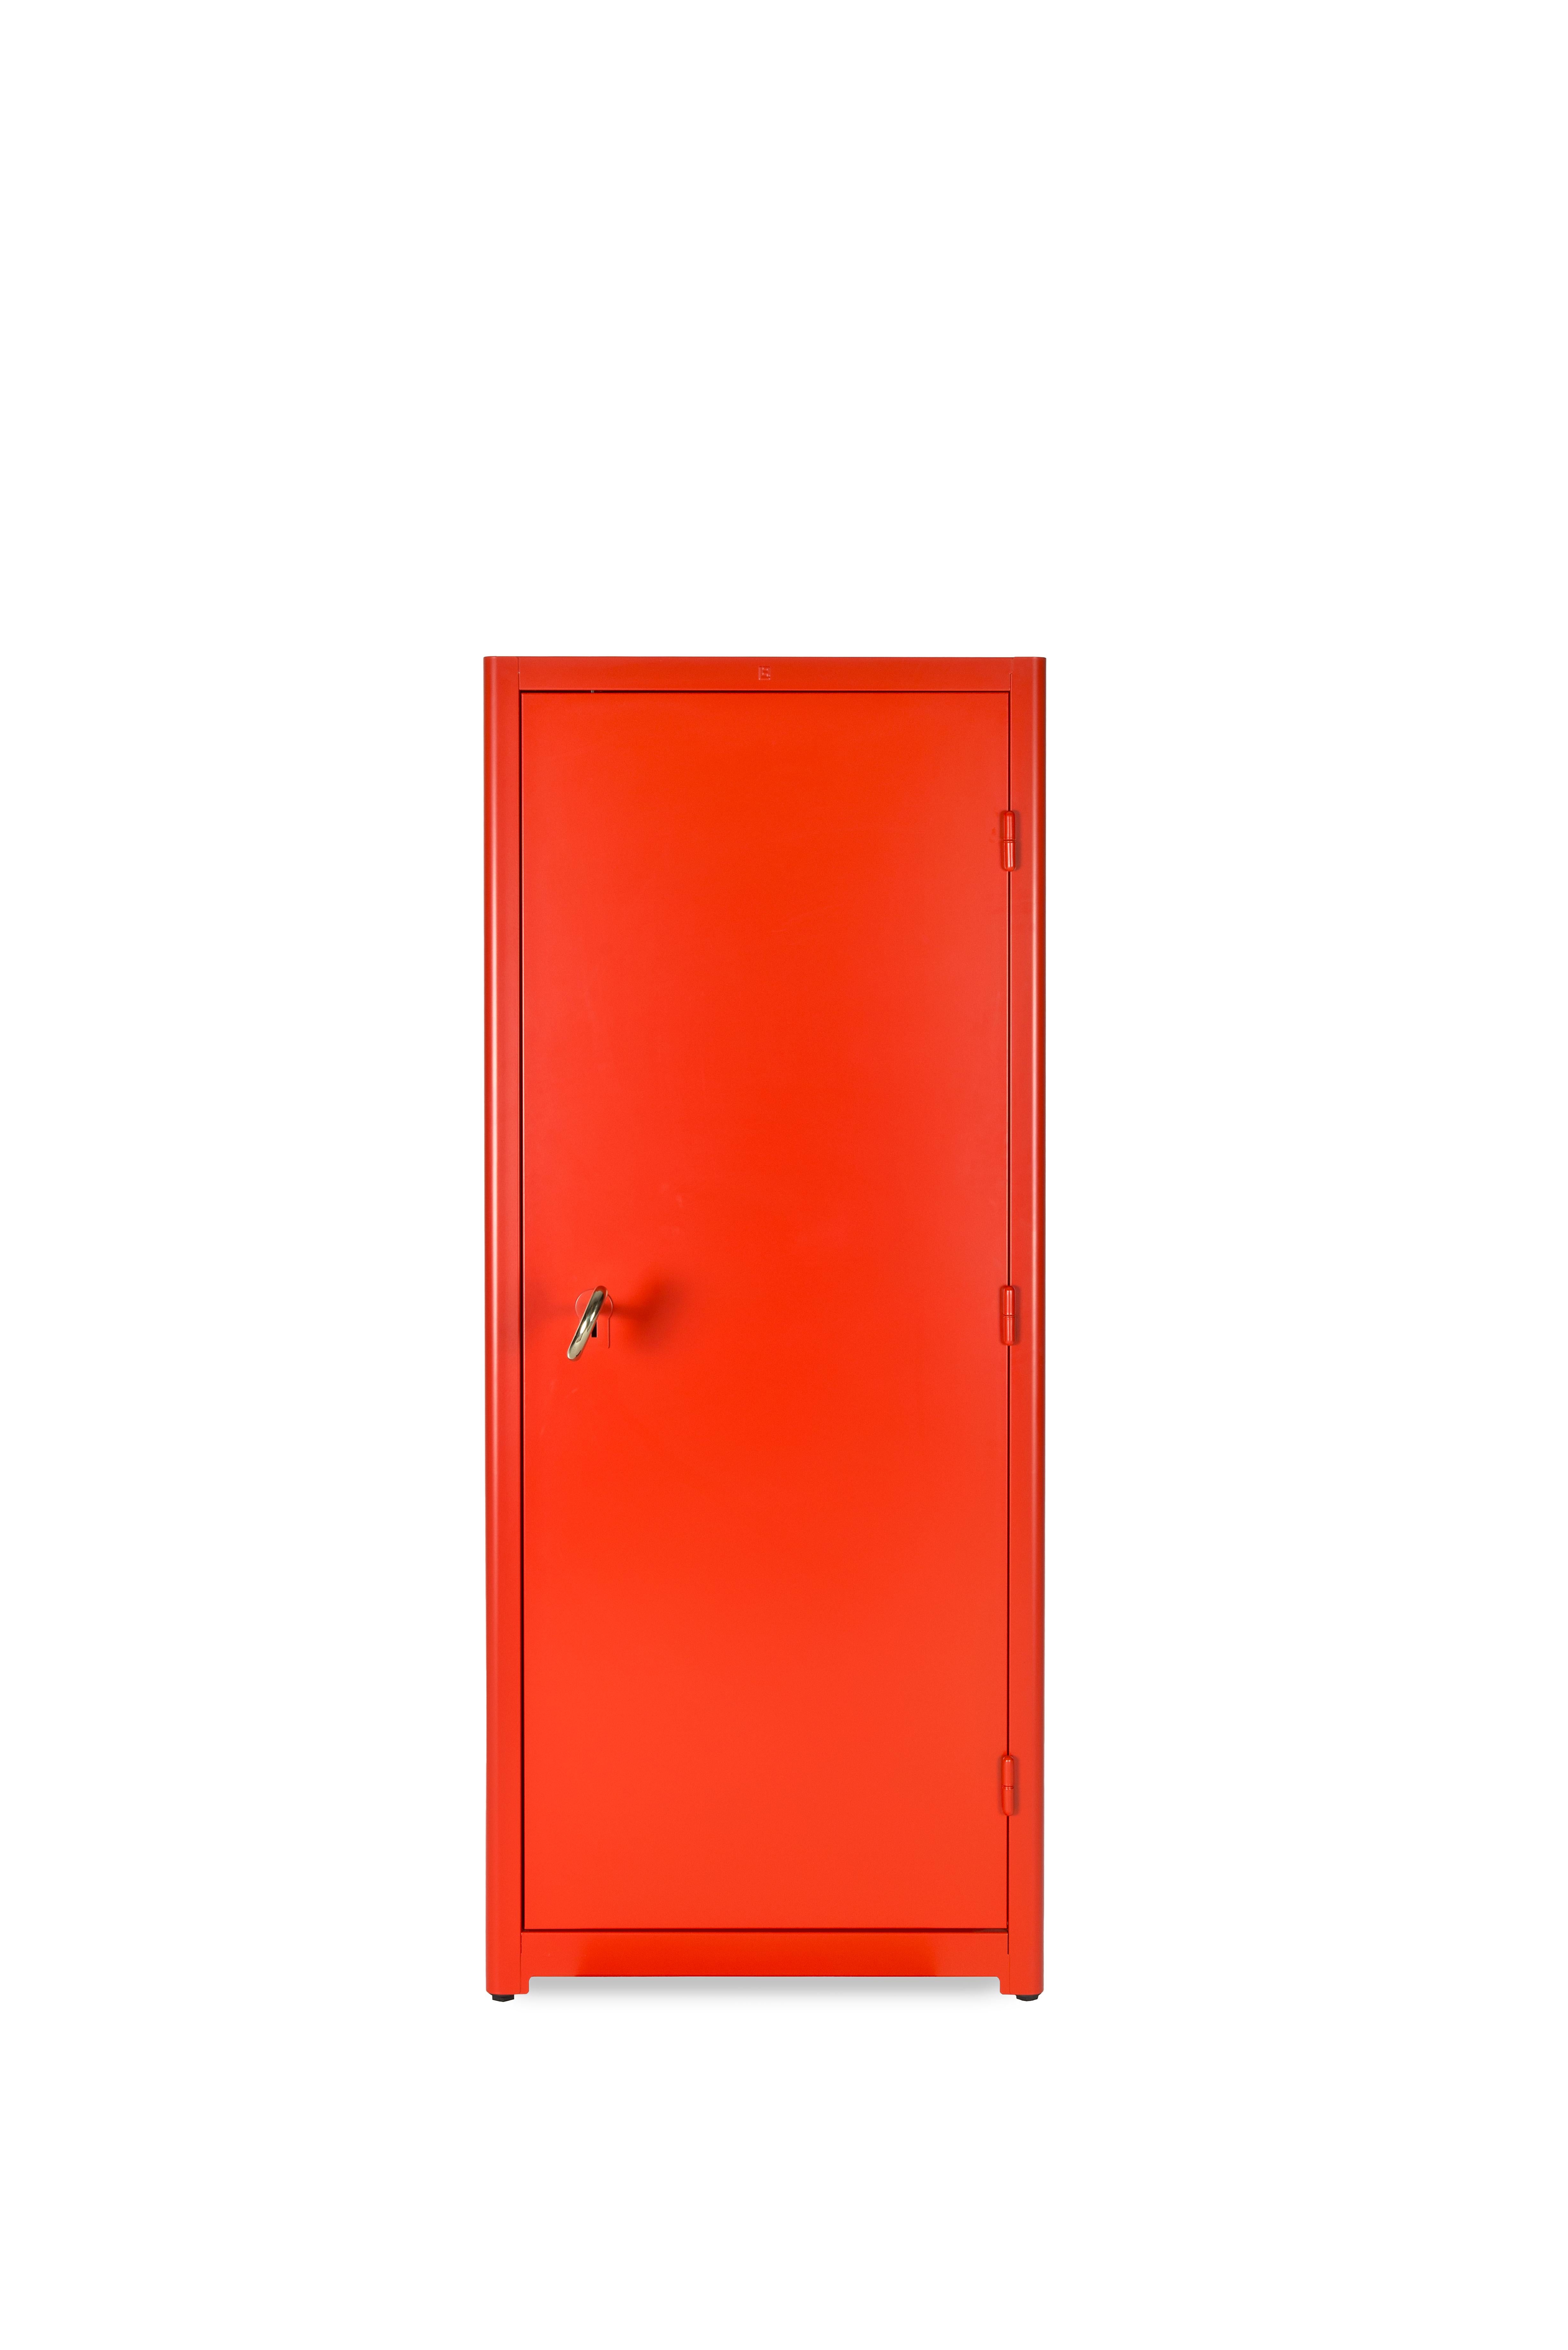 Kabinett

Lensvelt Job Schrank rot, ein Archetyp des von Studio Job entworfenen klassischen Aufbewahrungsschranks, mit einer besonderen Note. Das Gehäuse hat einen gigantischen goldfarbenen Schlüssel, der das Gefühl von Alice im Wunderland